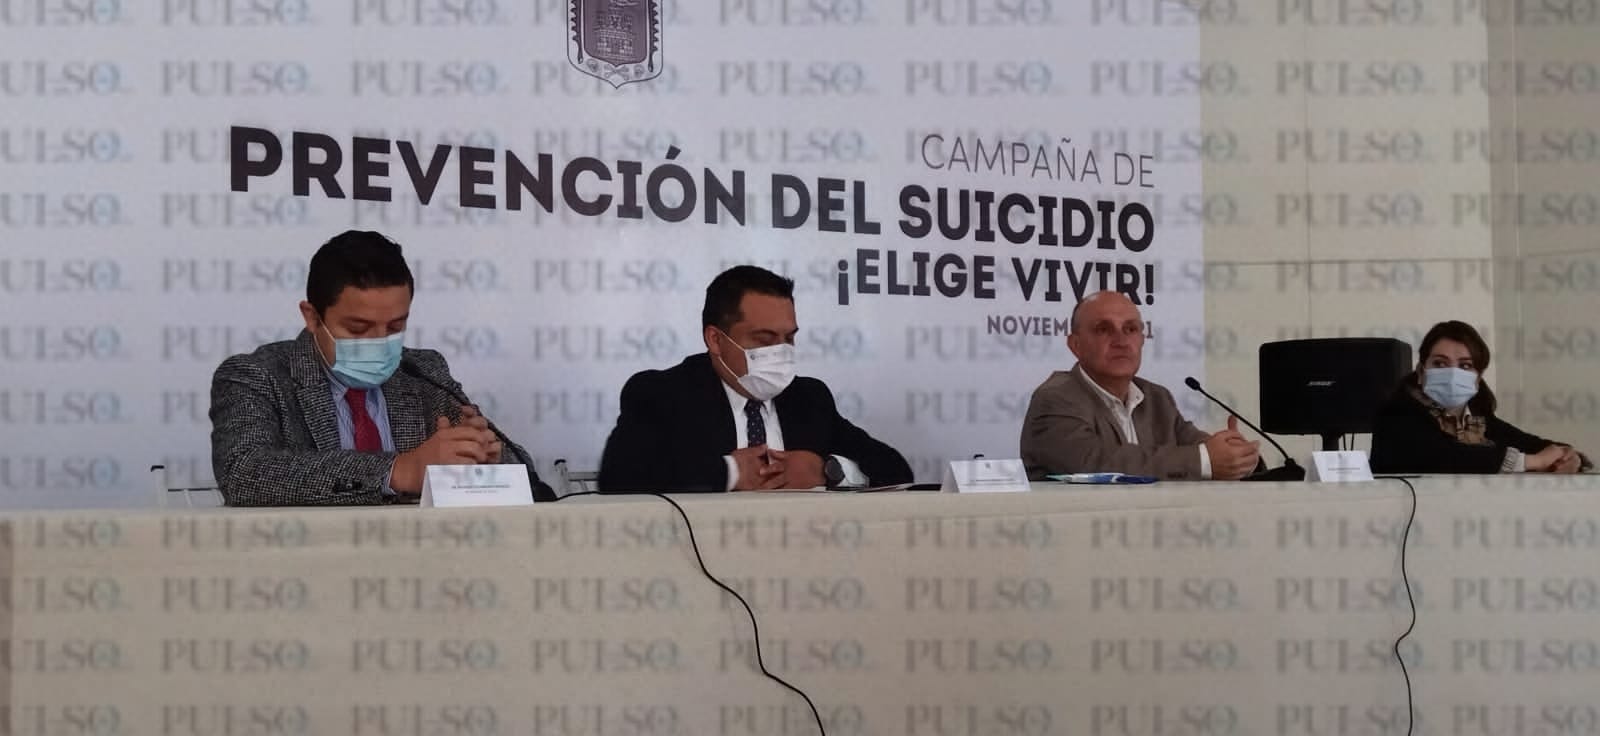 Tlaxcala se ubica en el lugar 22 a nivel nacional en tasa de suicidios (Video)